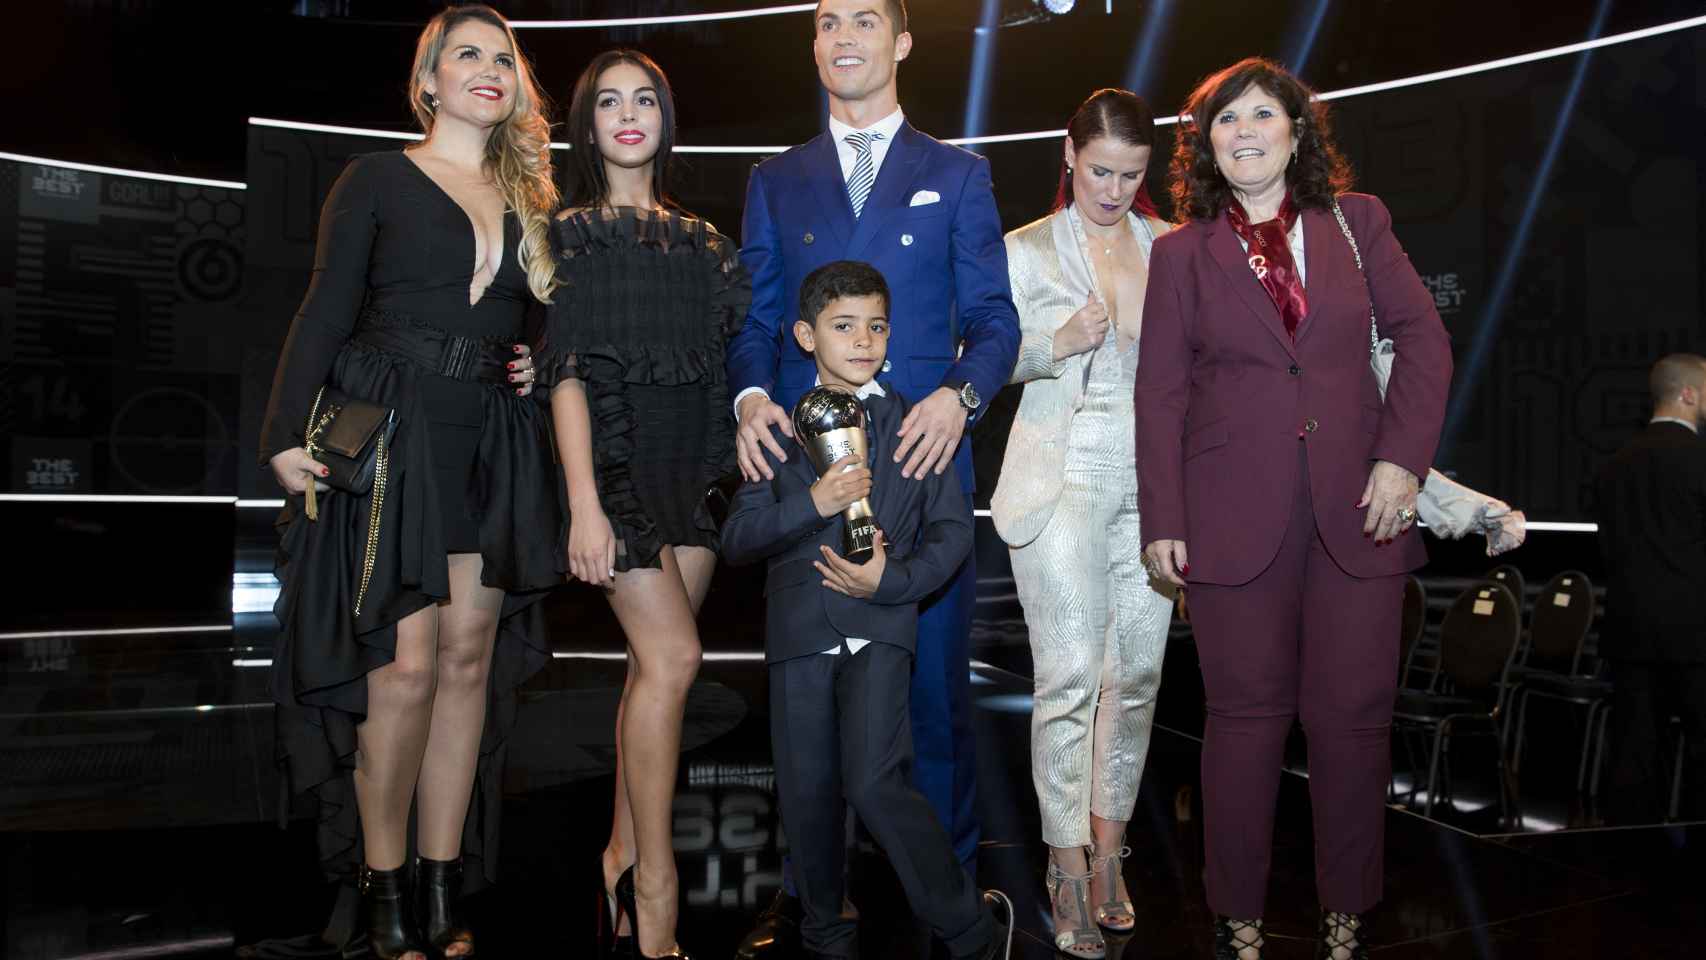 Cristiano posa junto a su novia, su madre y sus hermanas, que arropan al pequeño en el centro.